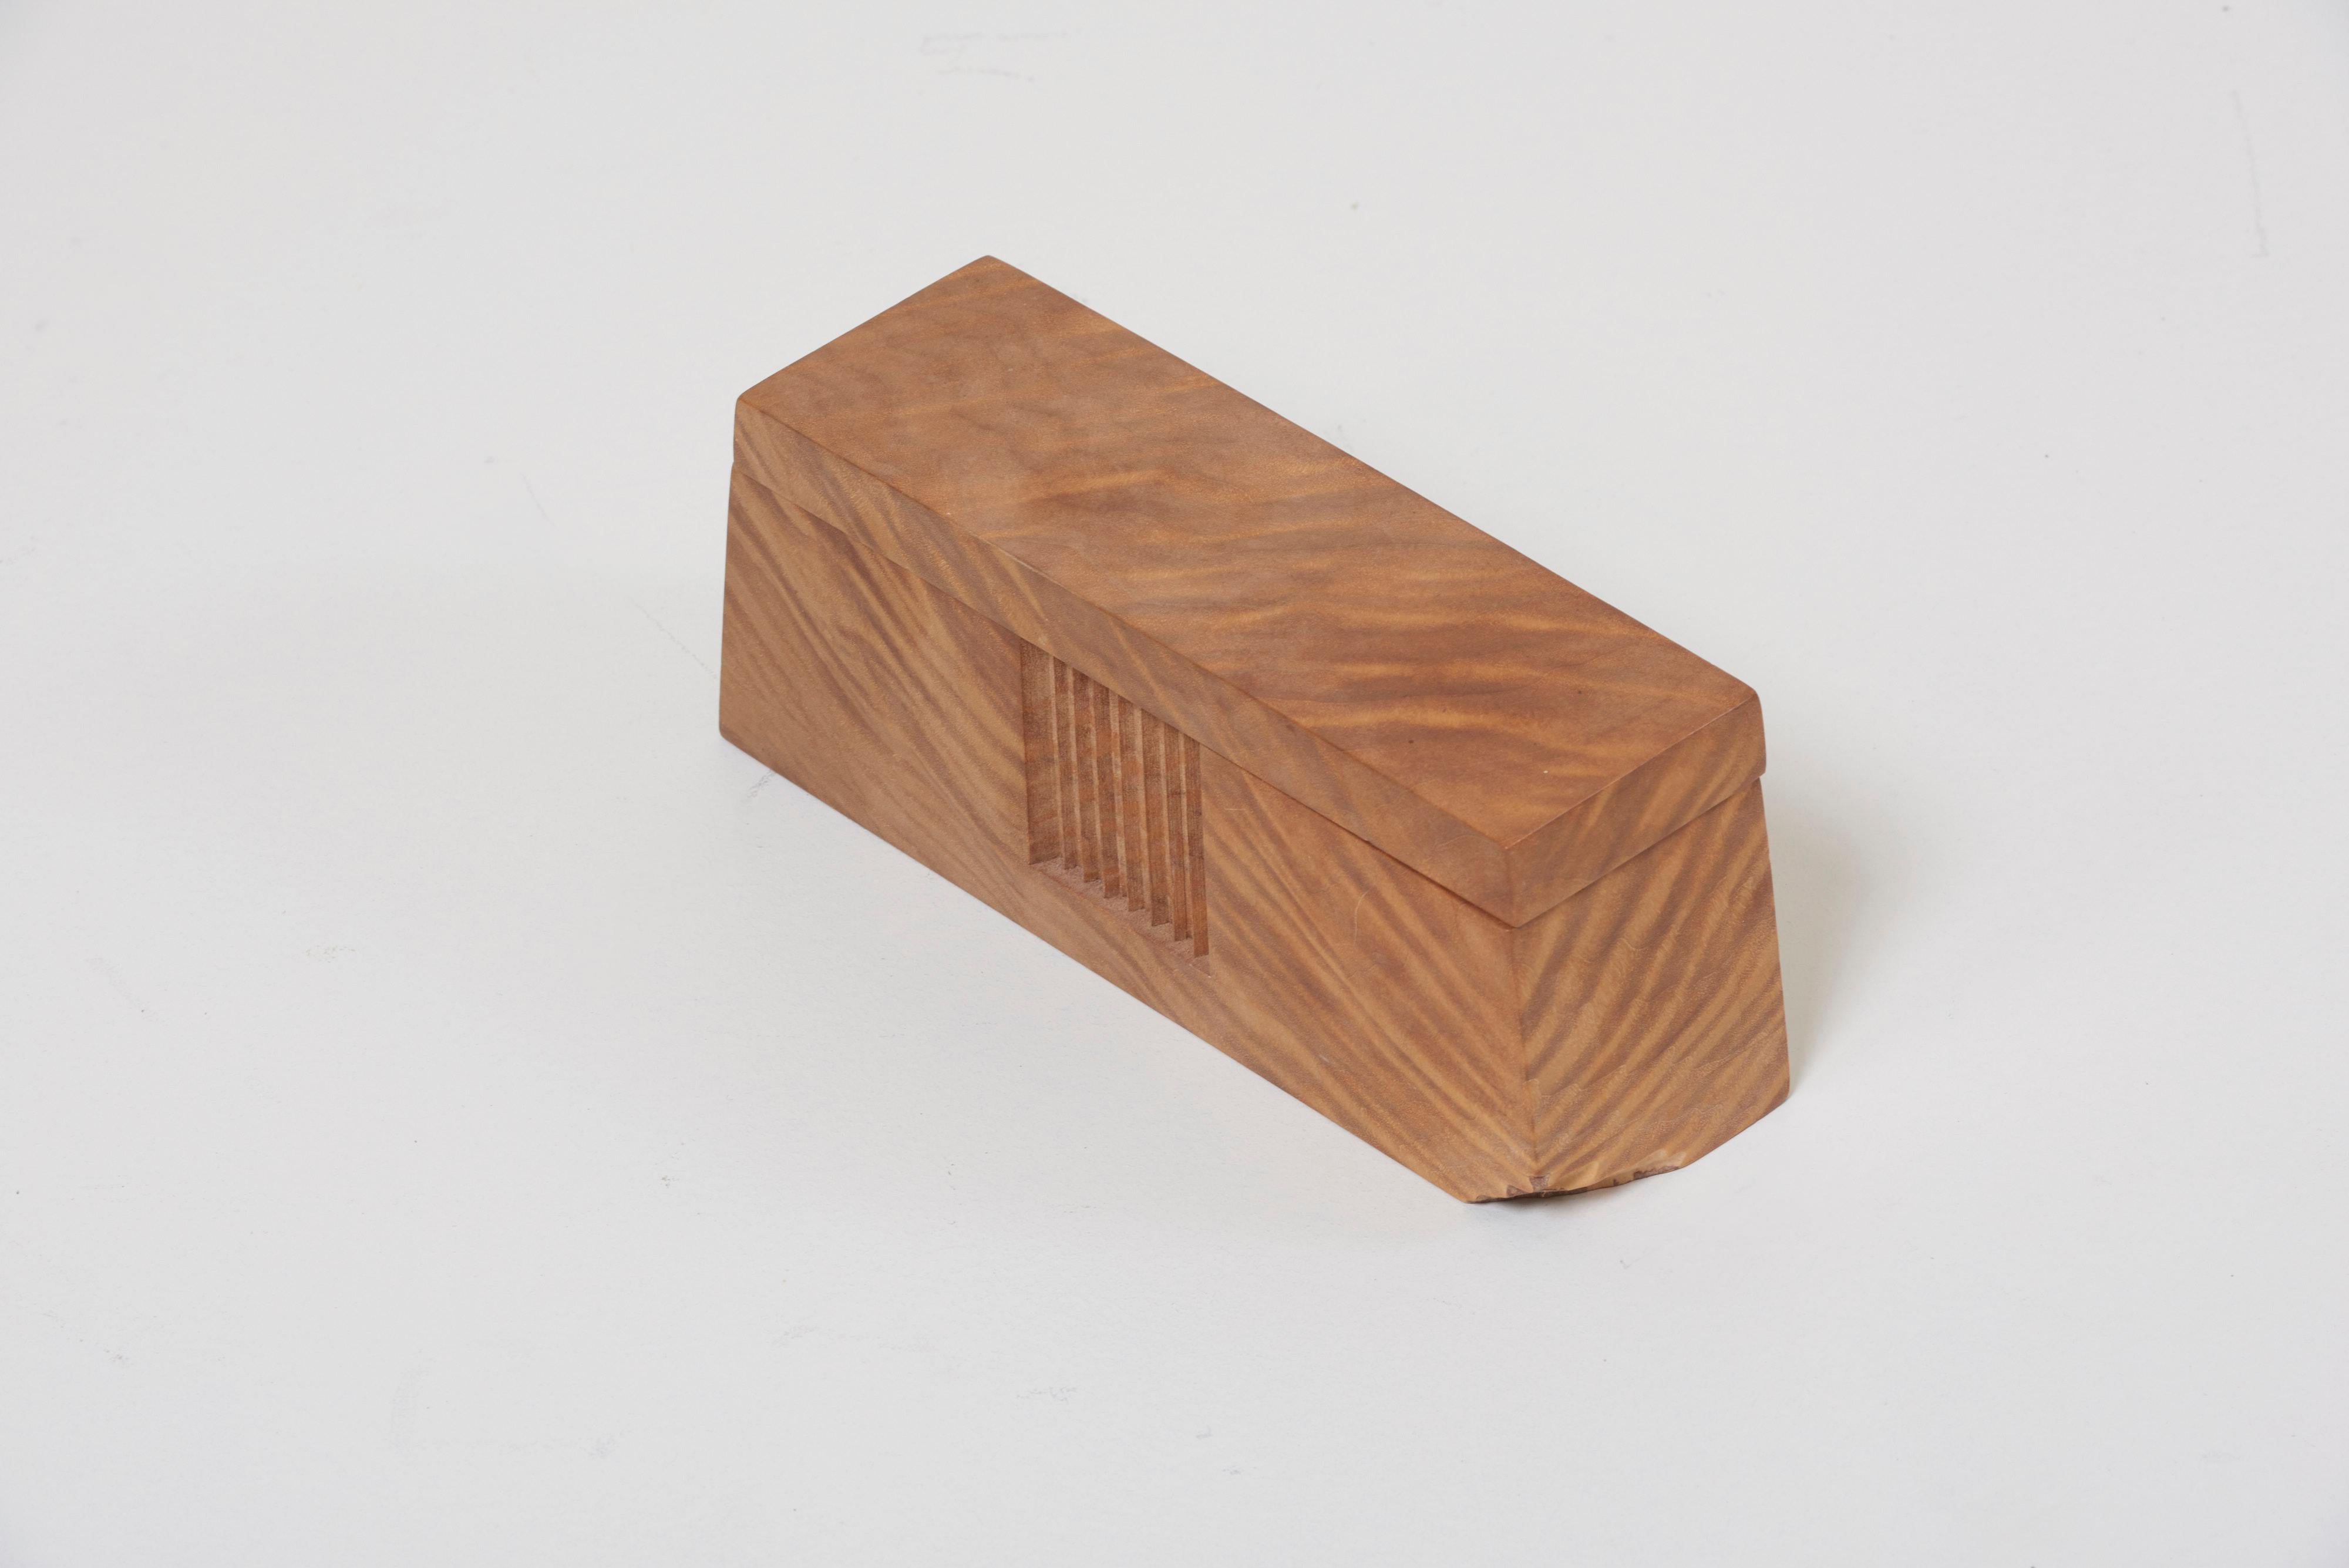 Studio Box by American Craftsman Michael Elkan, US for your personal belongings.

